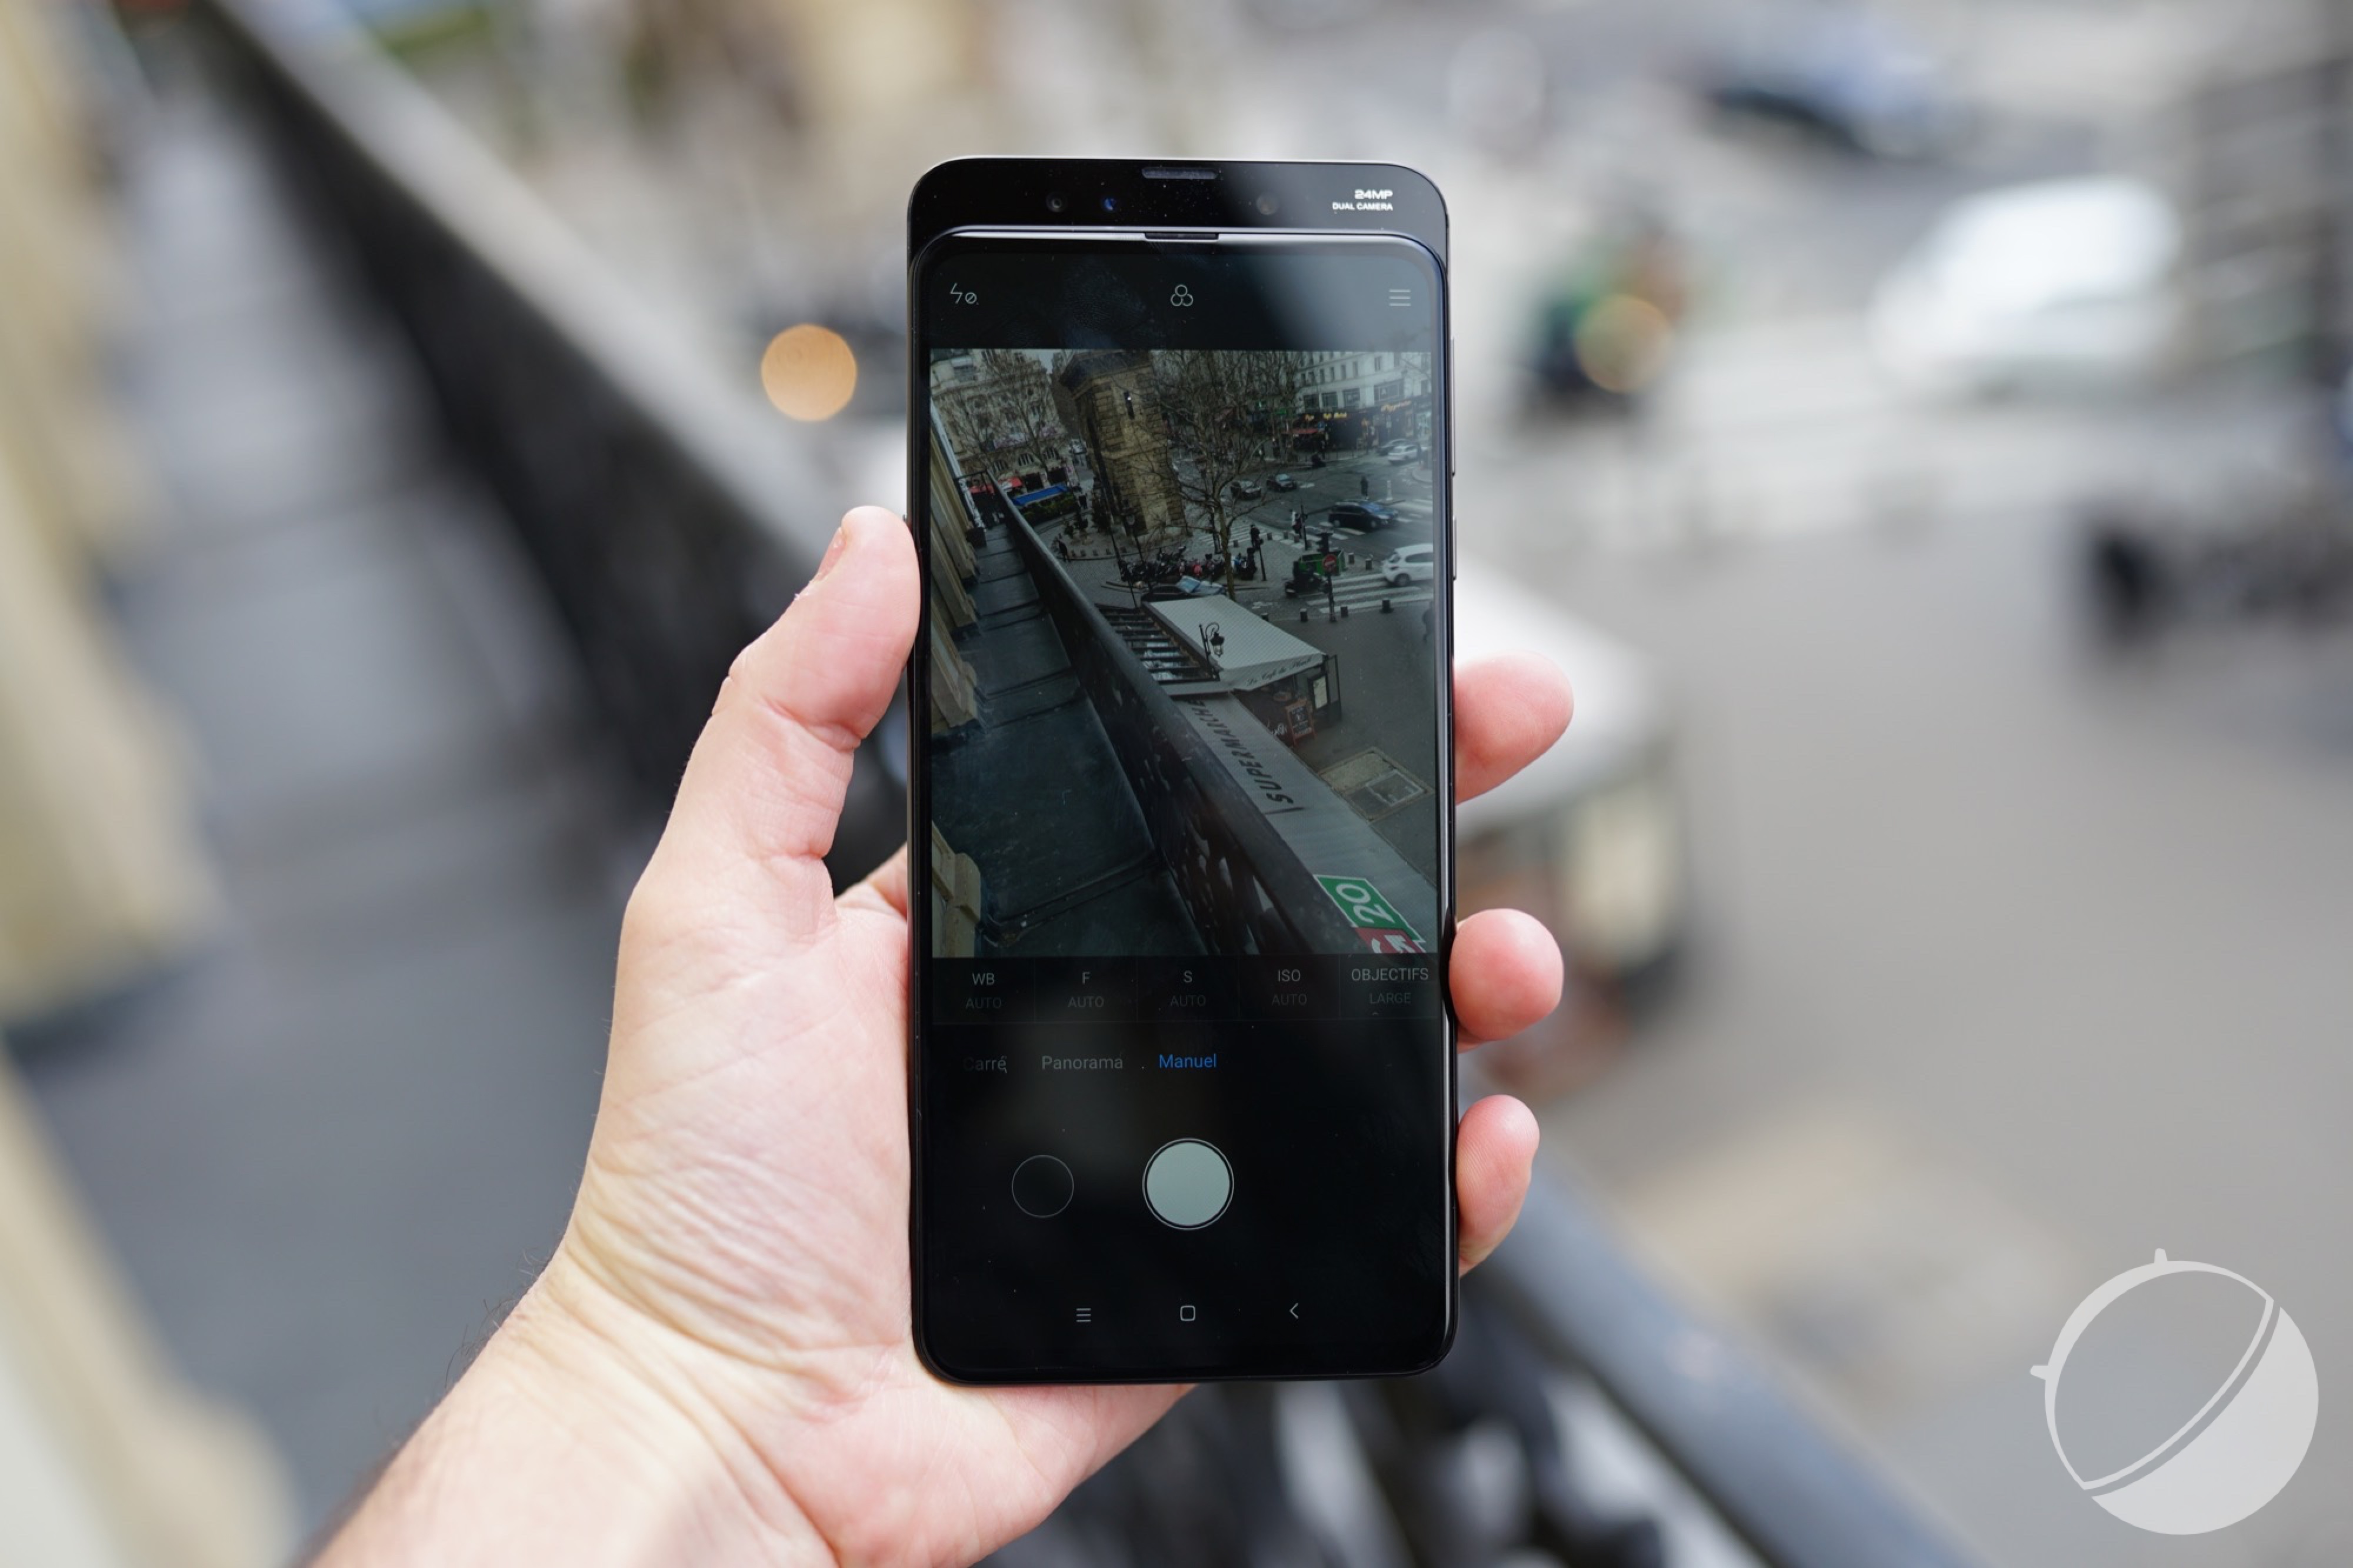 Merlin – coque de téléphone en verre, étui en Silicone pour iPhone